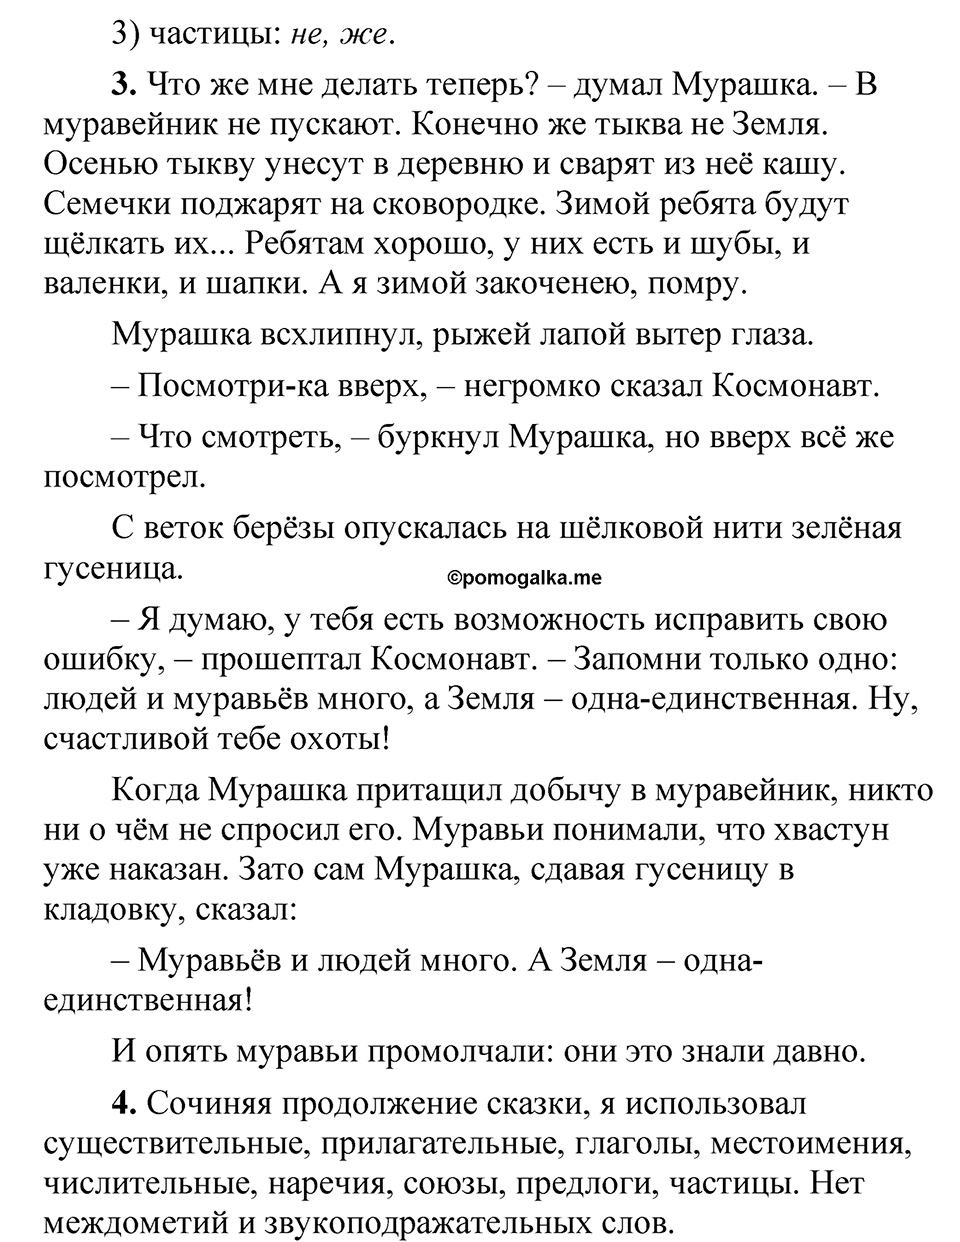 страница 74 Анализируем текст русский язык 5 класс Быстрова, Кибирева 2 часть 2021 год